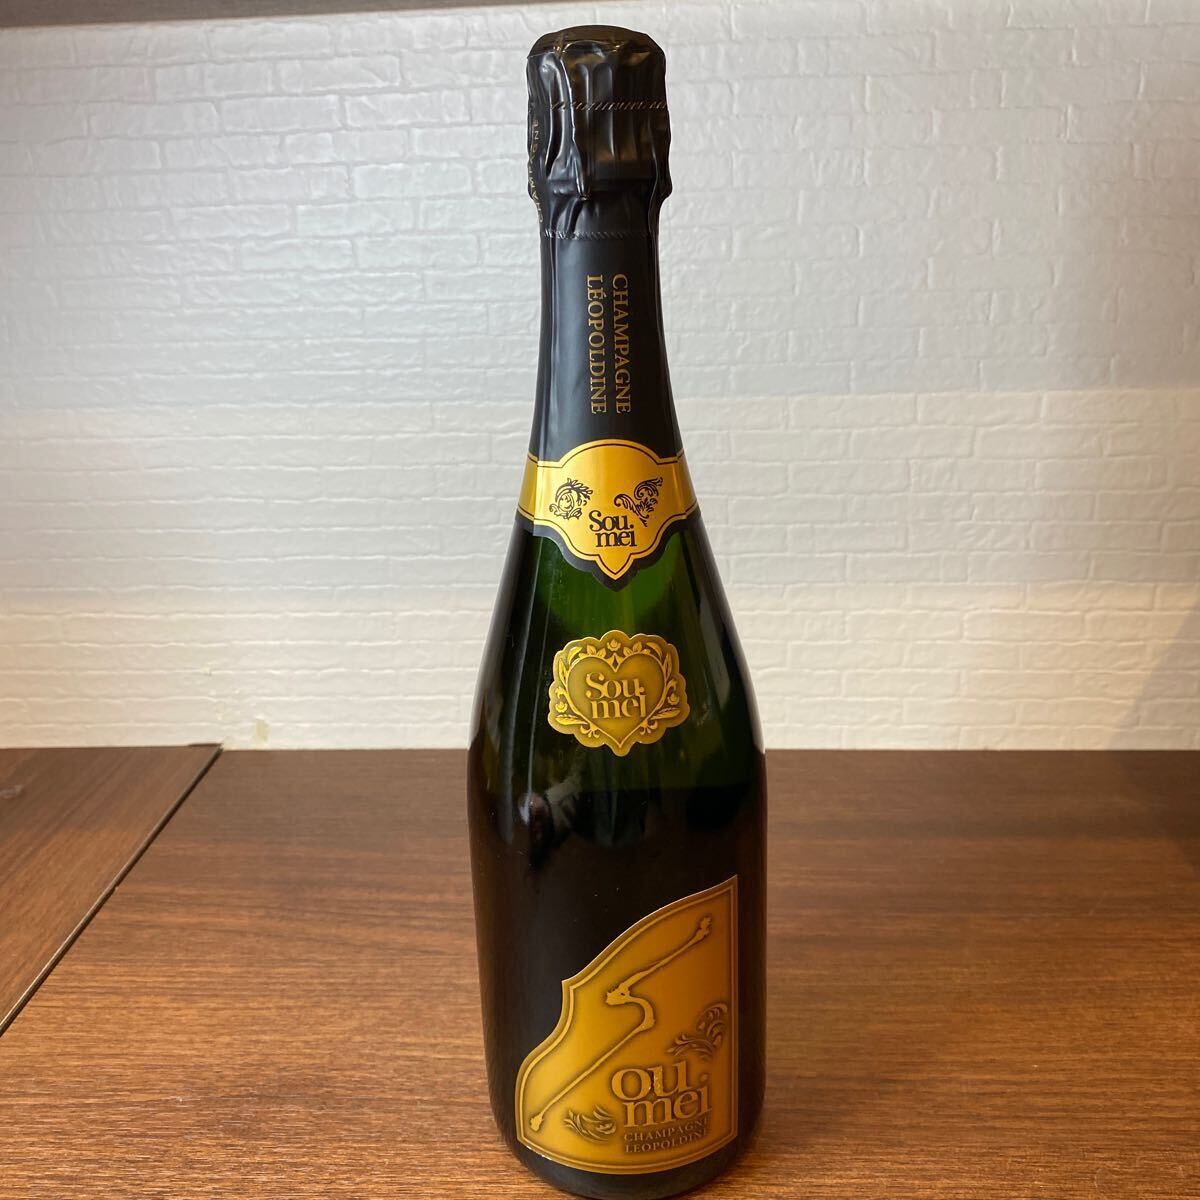 A4125/【個人保管】Soumei ブリュット シャンパン ソウメイ 750ml アルコール12.5% お酒 酒 ブランド ラベルキズありの画像1